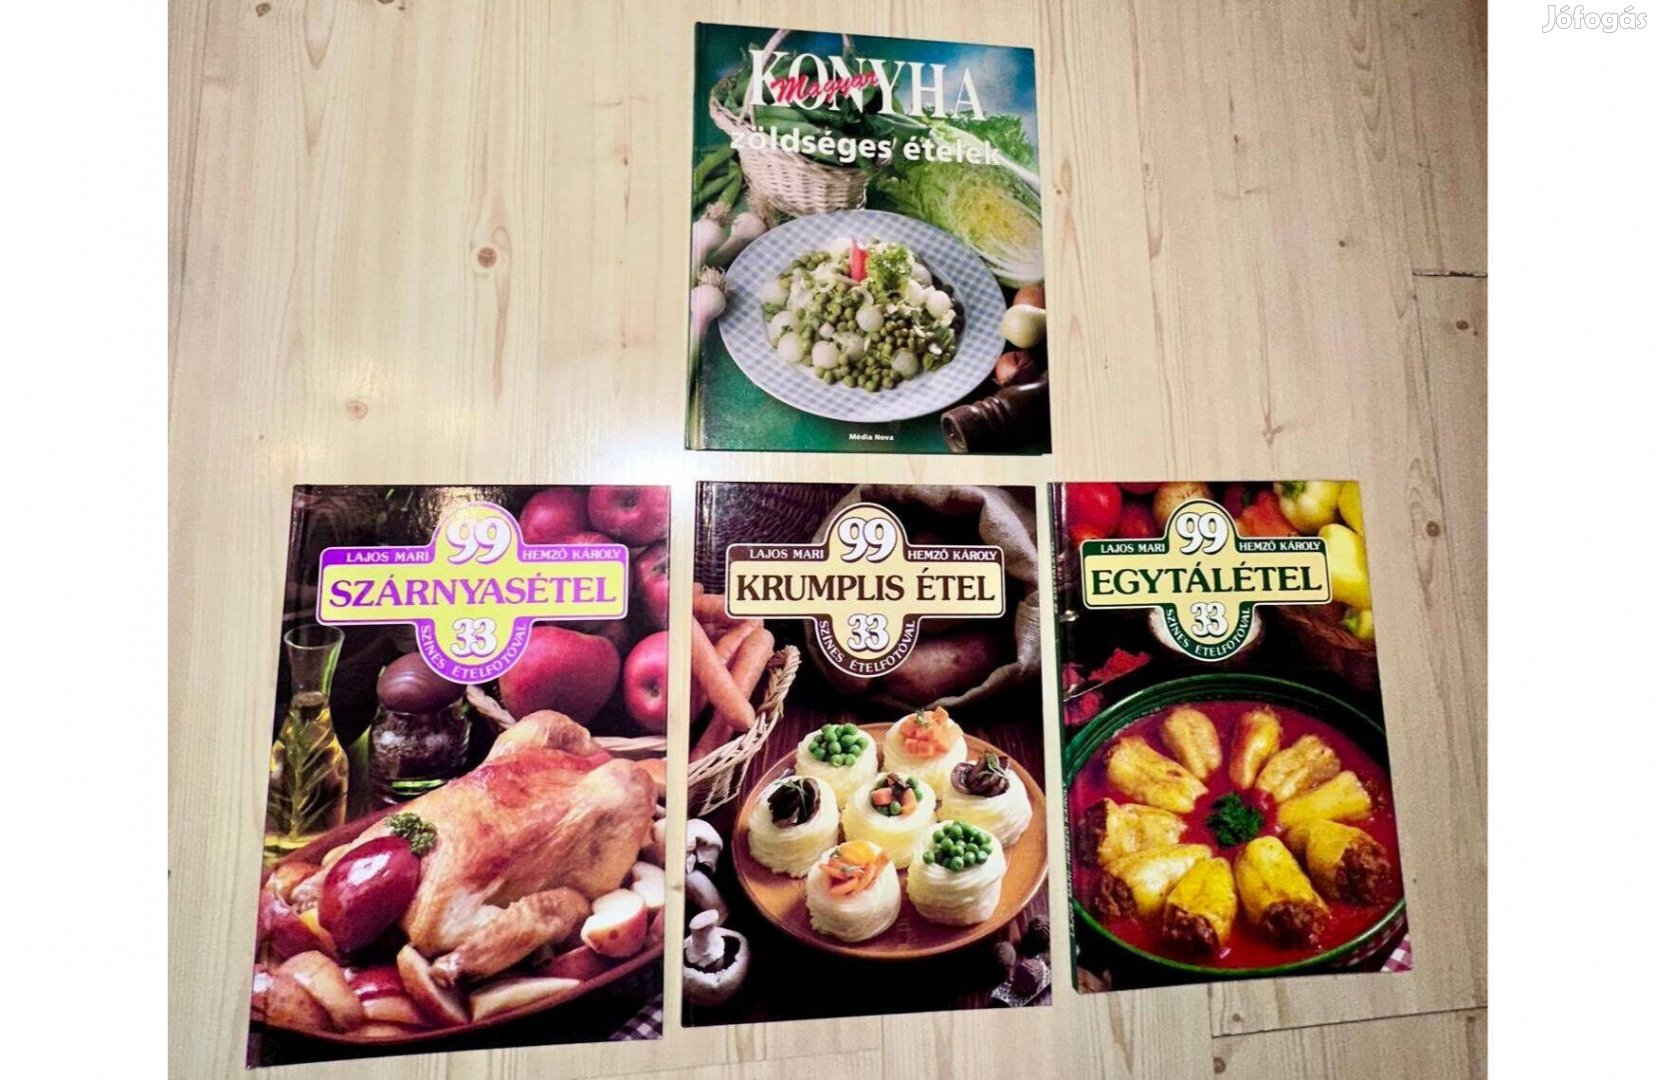 Lajos M.-Hemző K. 3 db szakácskönyve + zöldséges ételek